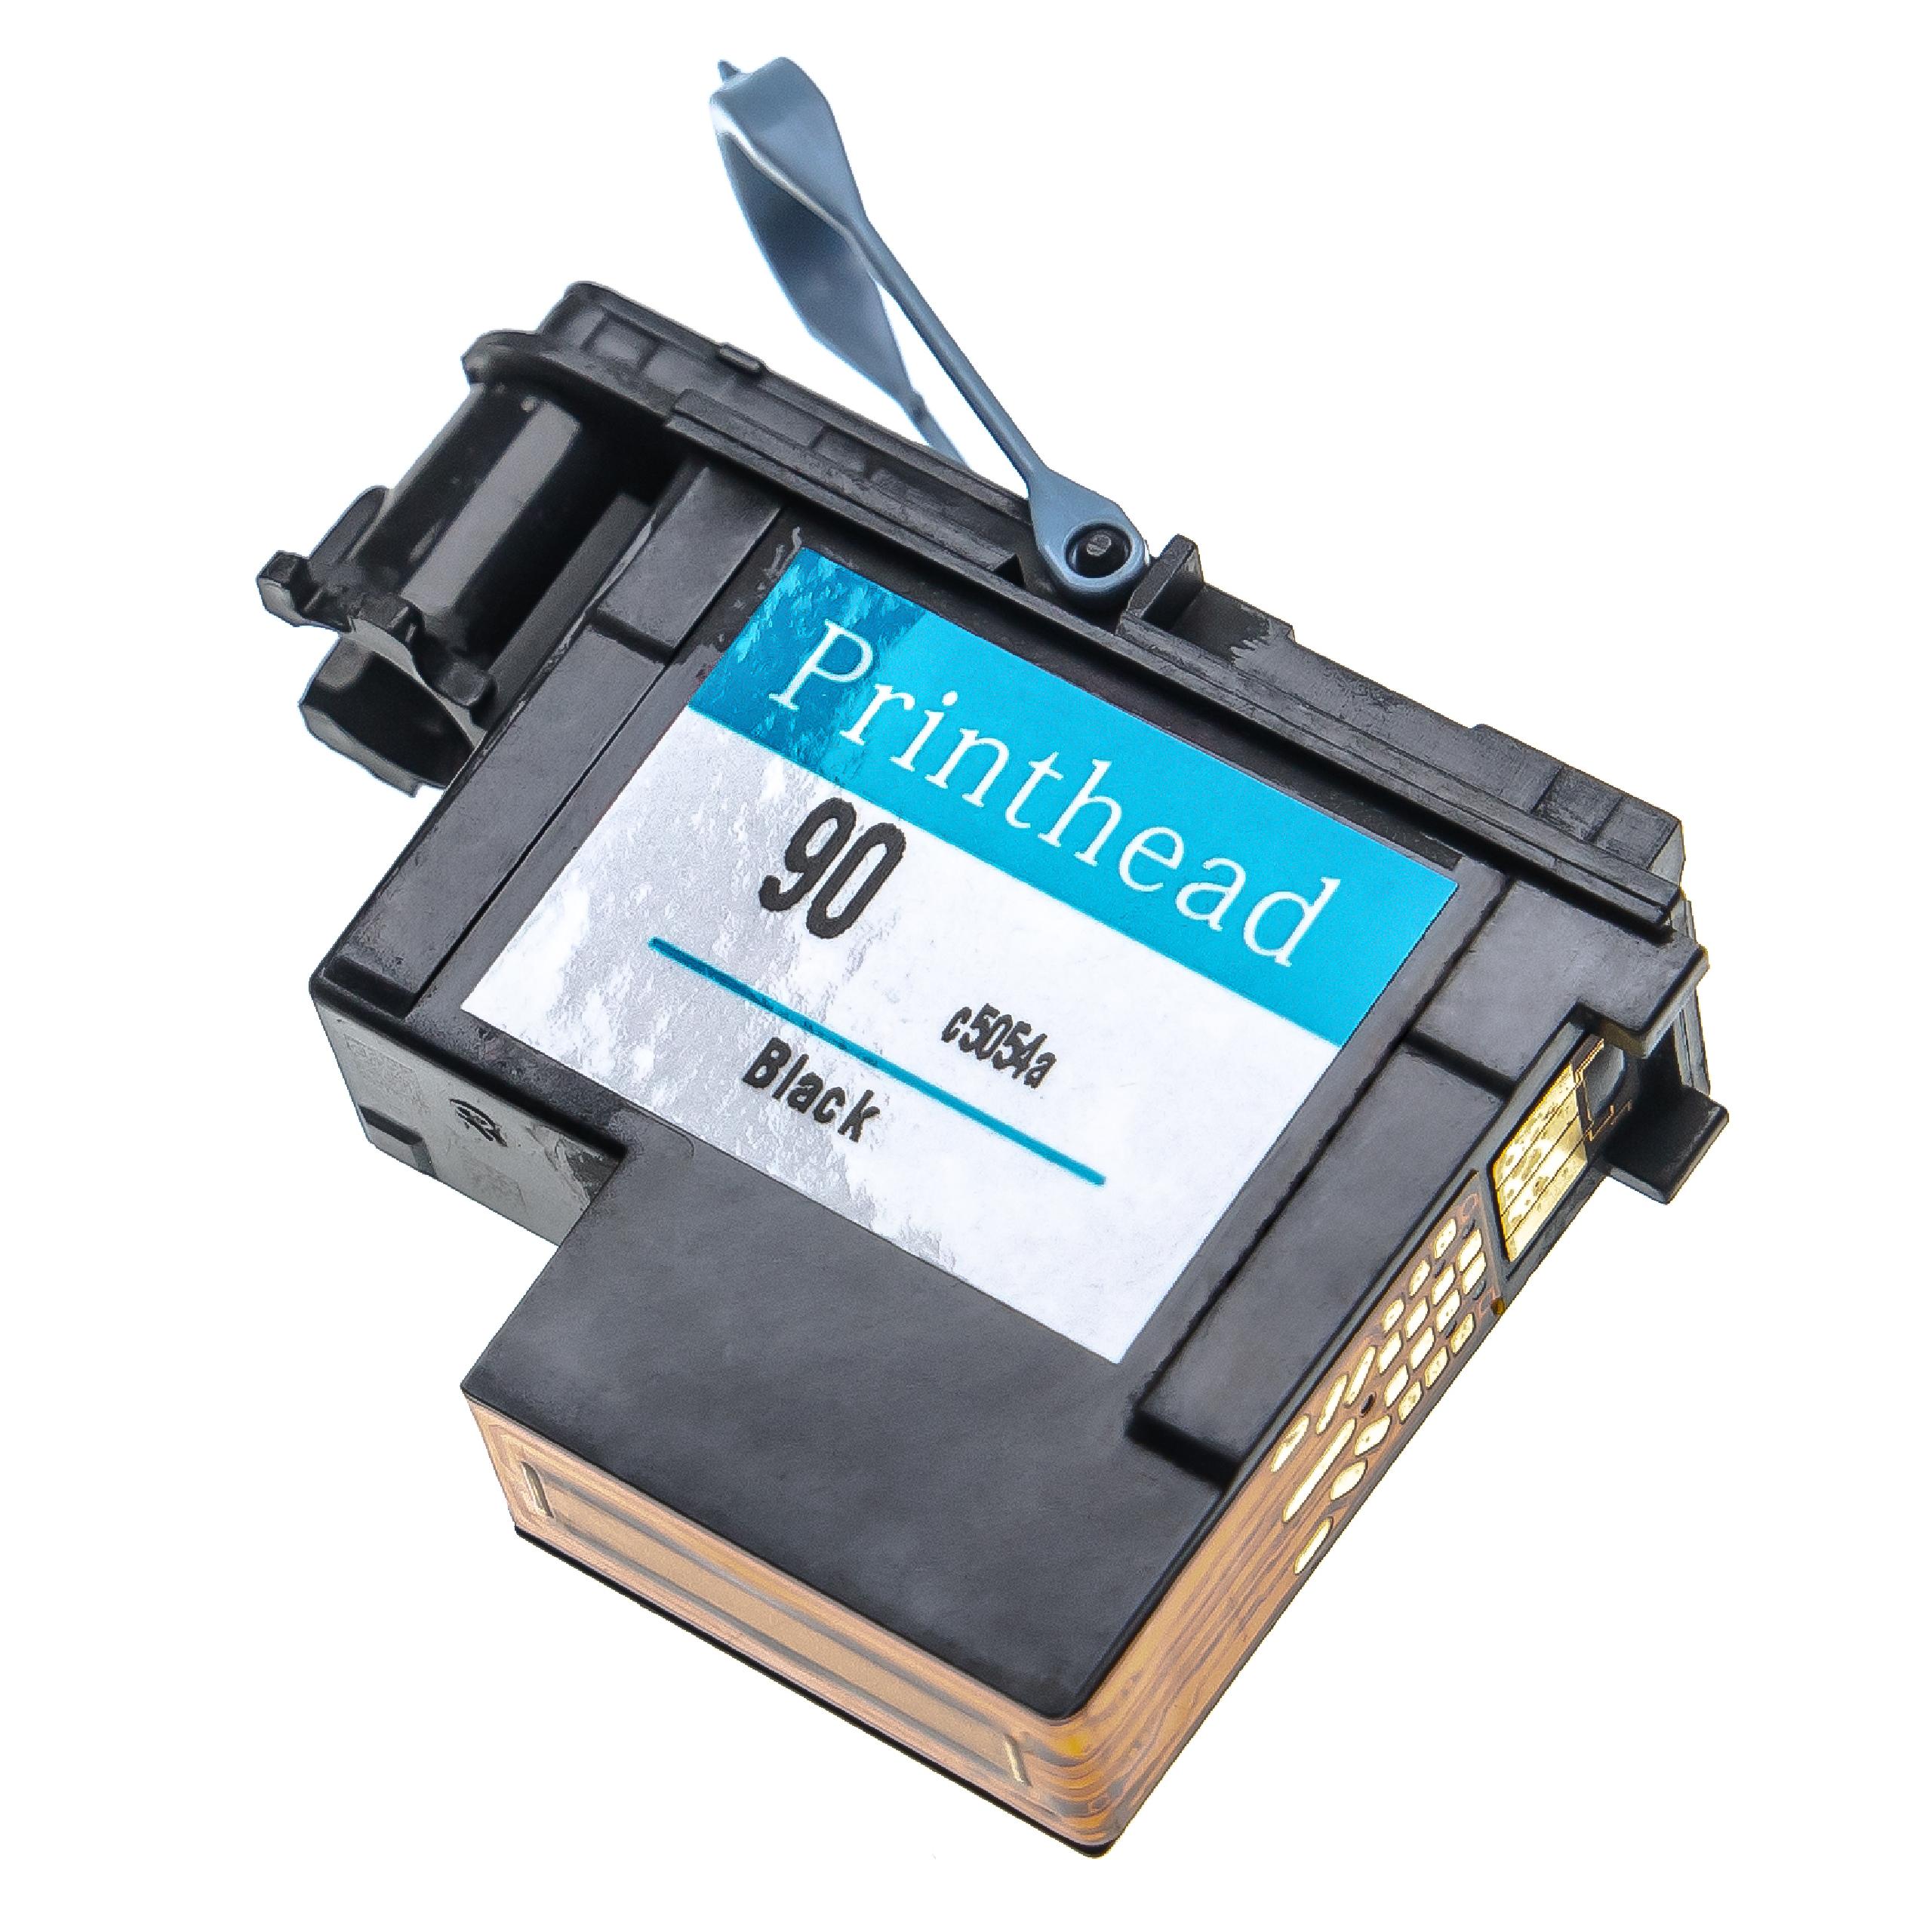 Druckkopf für HP DesignJet HP C5054A Drucker - schwarz, 6 cm breit, Refurbished, Mit Reiniger